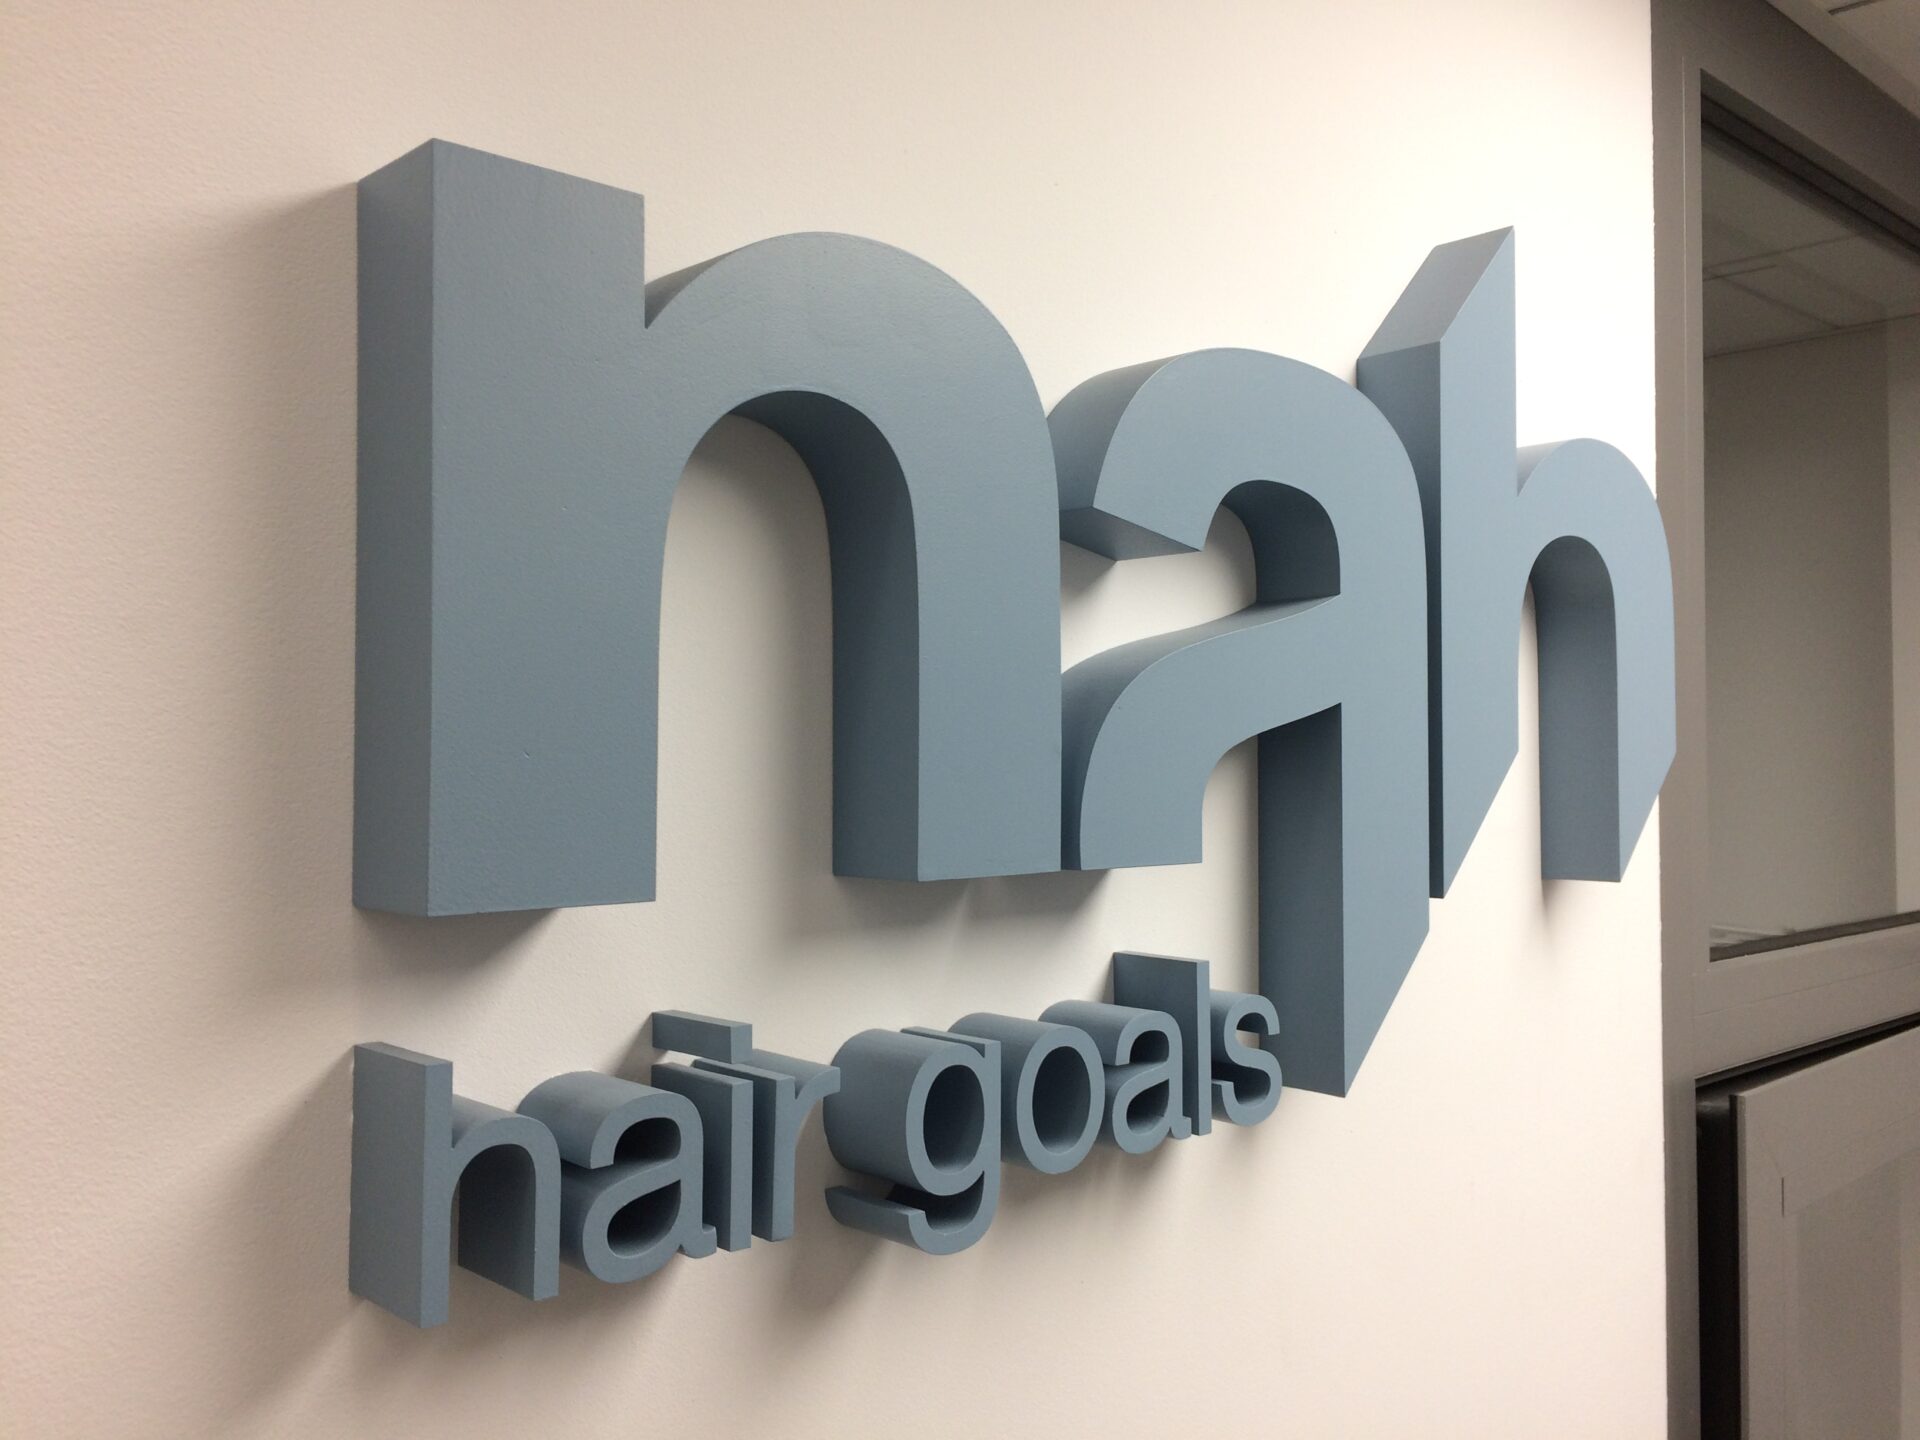 Szarozielone litery blokowe na białej ścianie: nah - duży napis w formie graficznej z powiększonym a, opdicętym 1/4 wysokości hair goals - mały napis